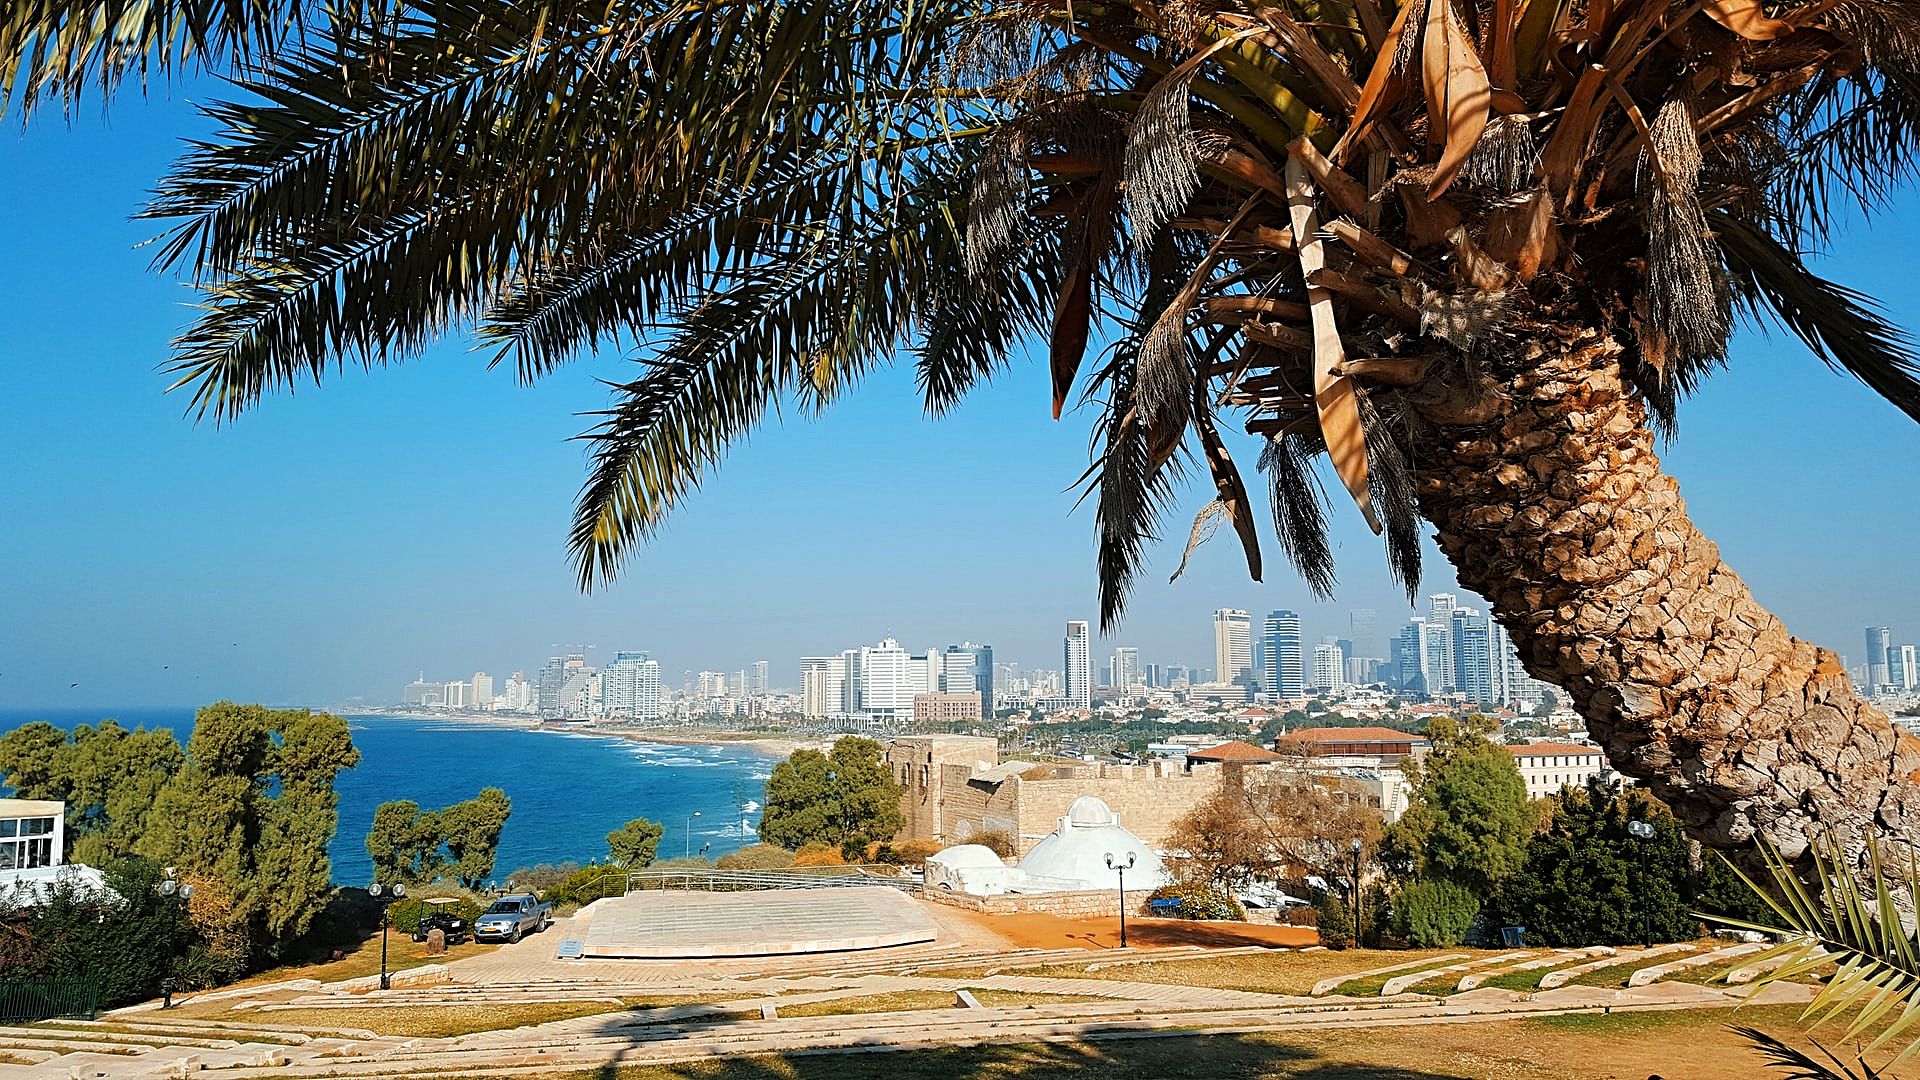 A palm tree in Jaffa, Israel